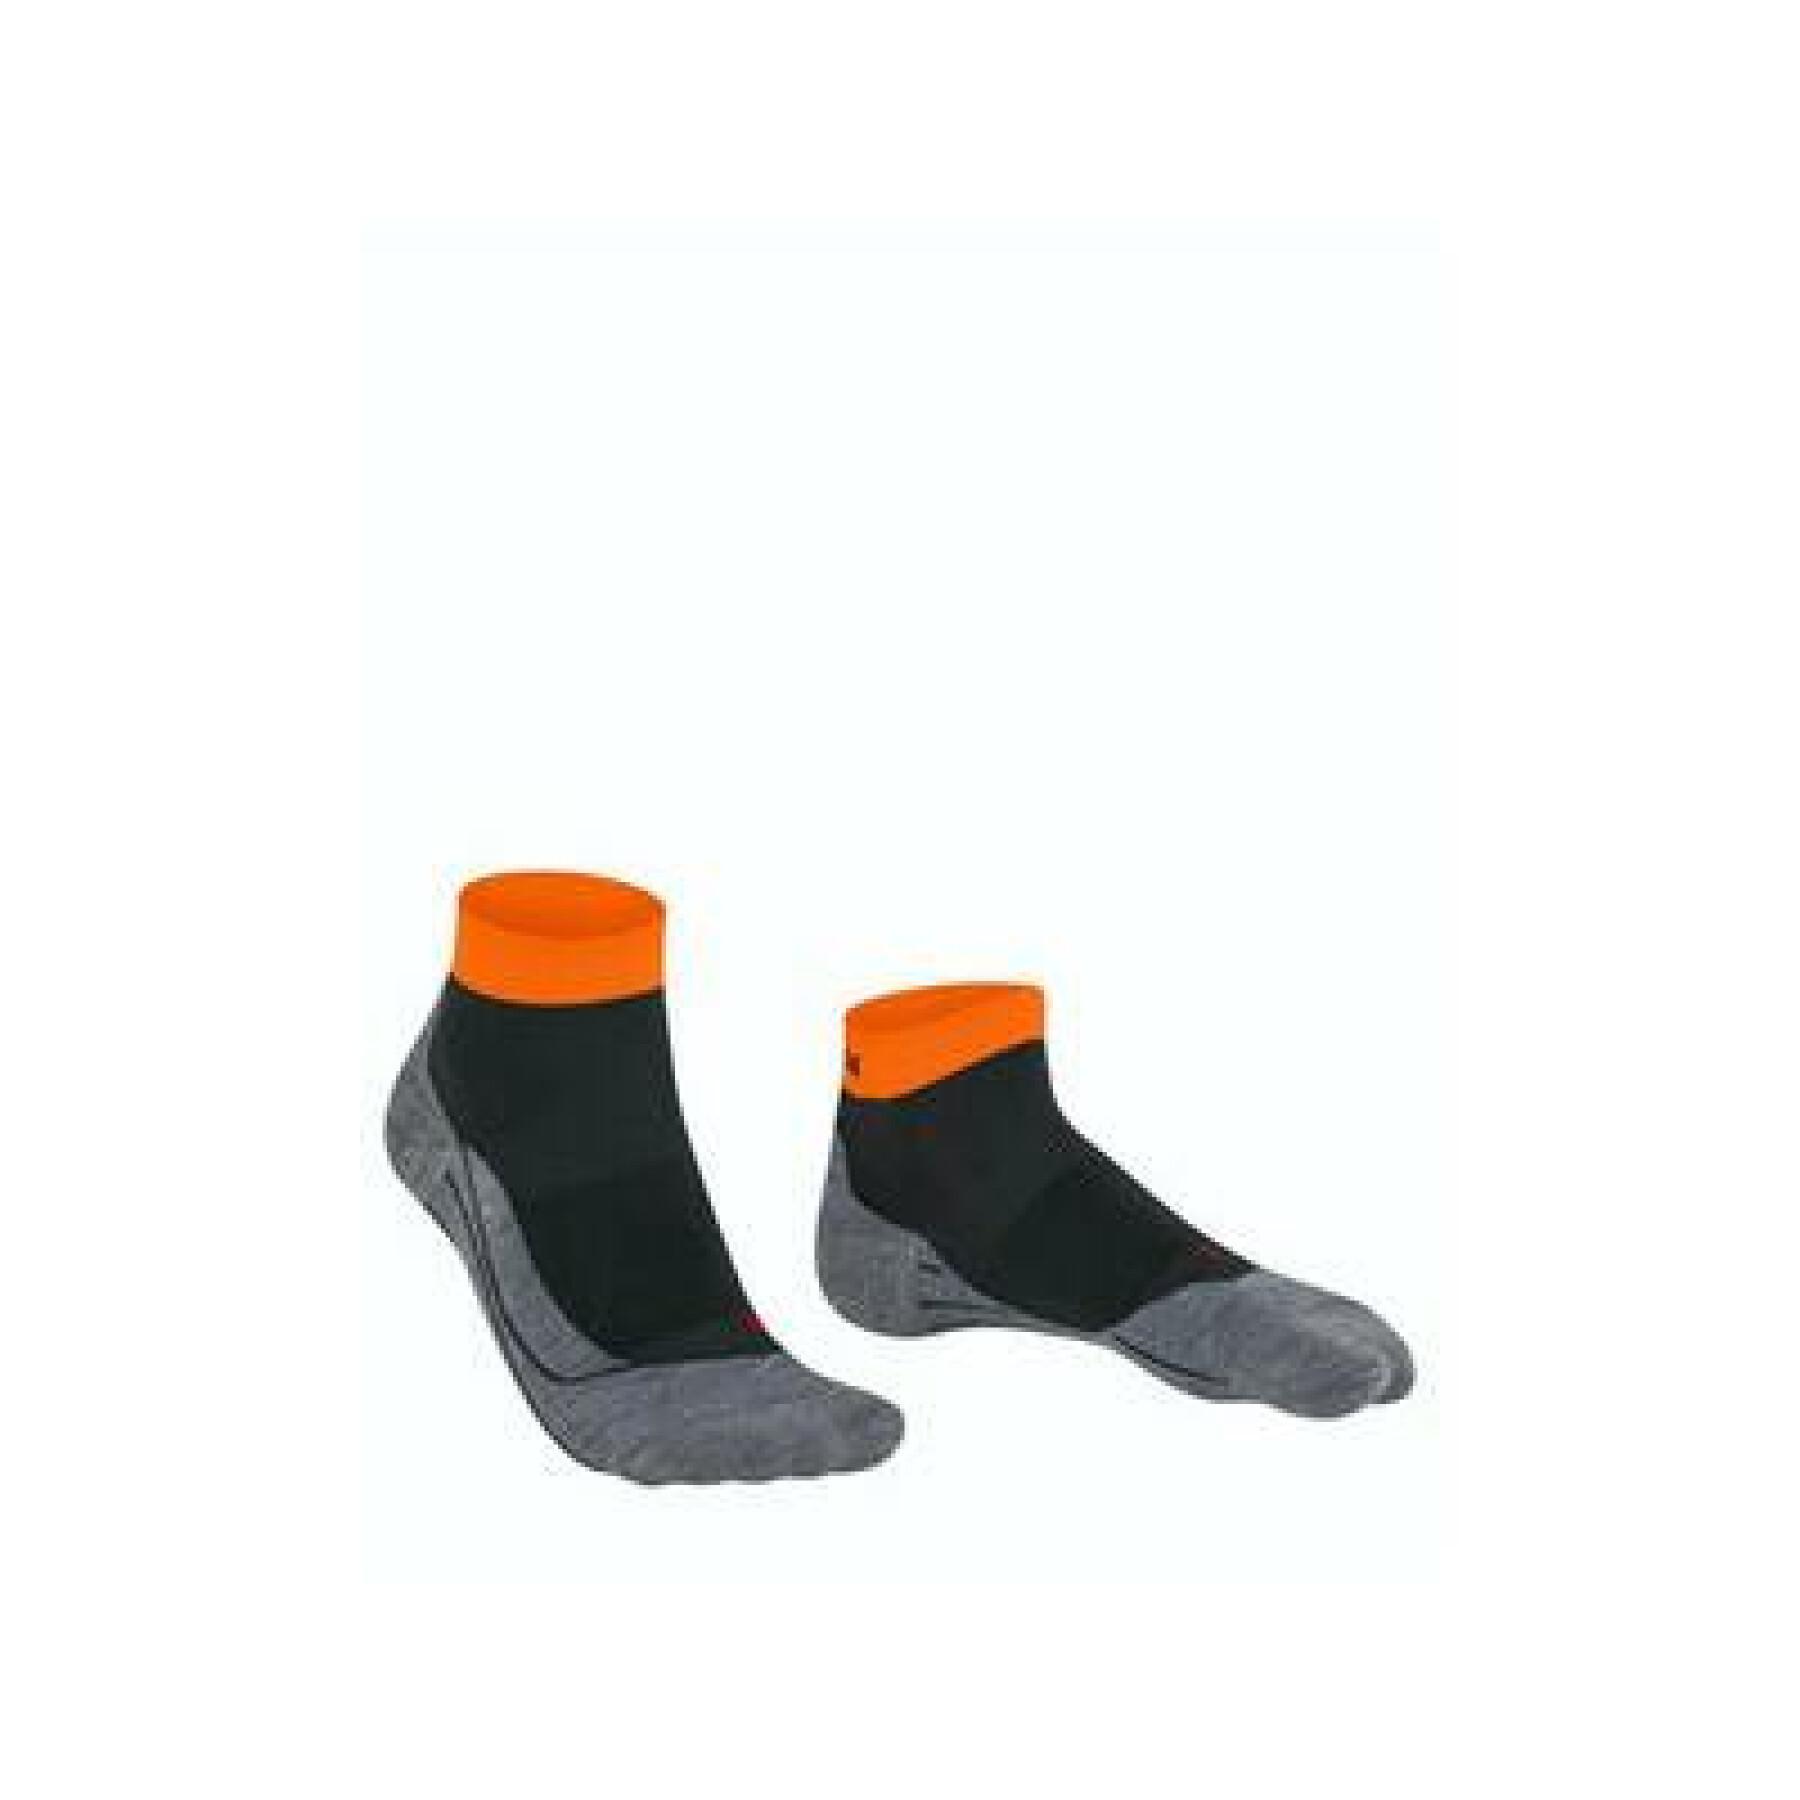 Women's short socks Falke Ru4